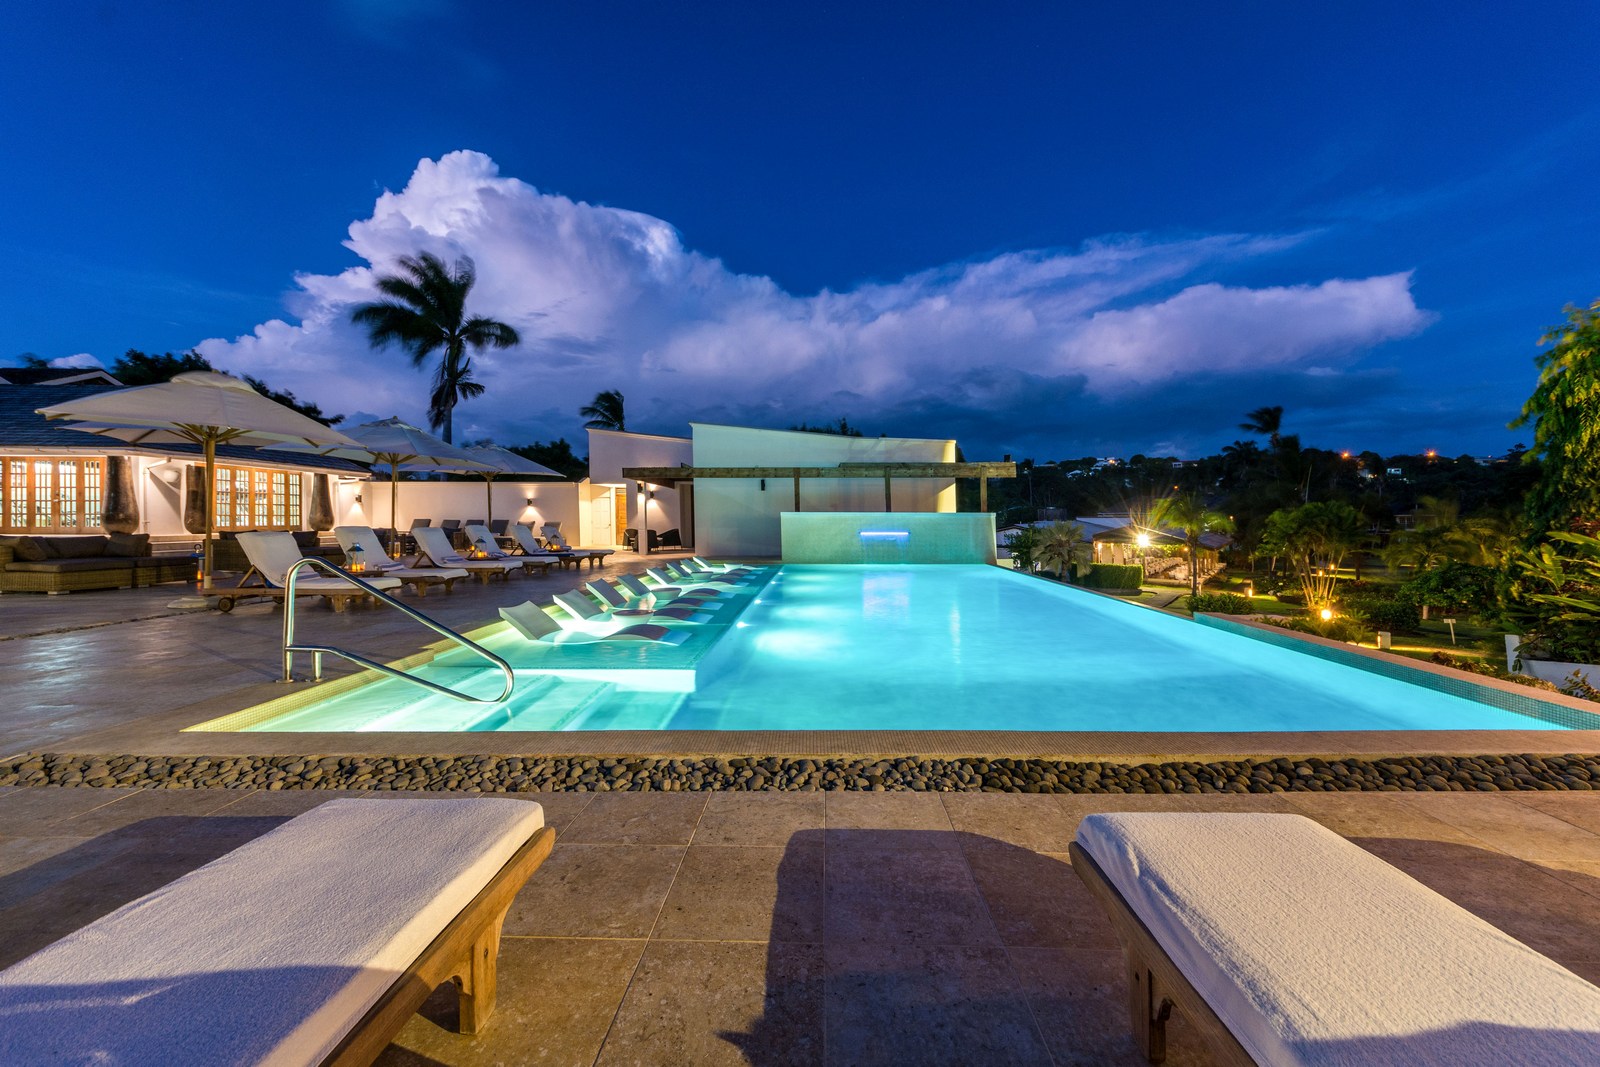 the main pool of Calabash Hotel, Grenada